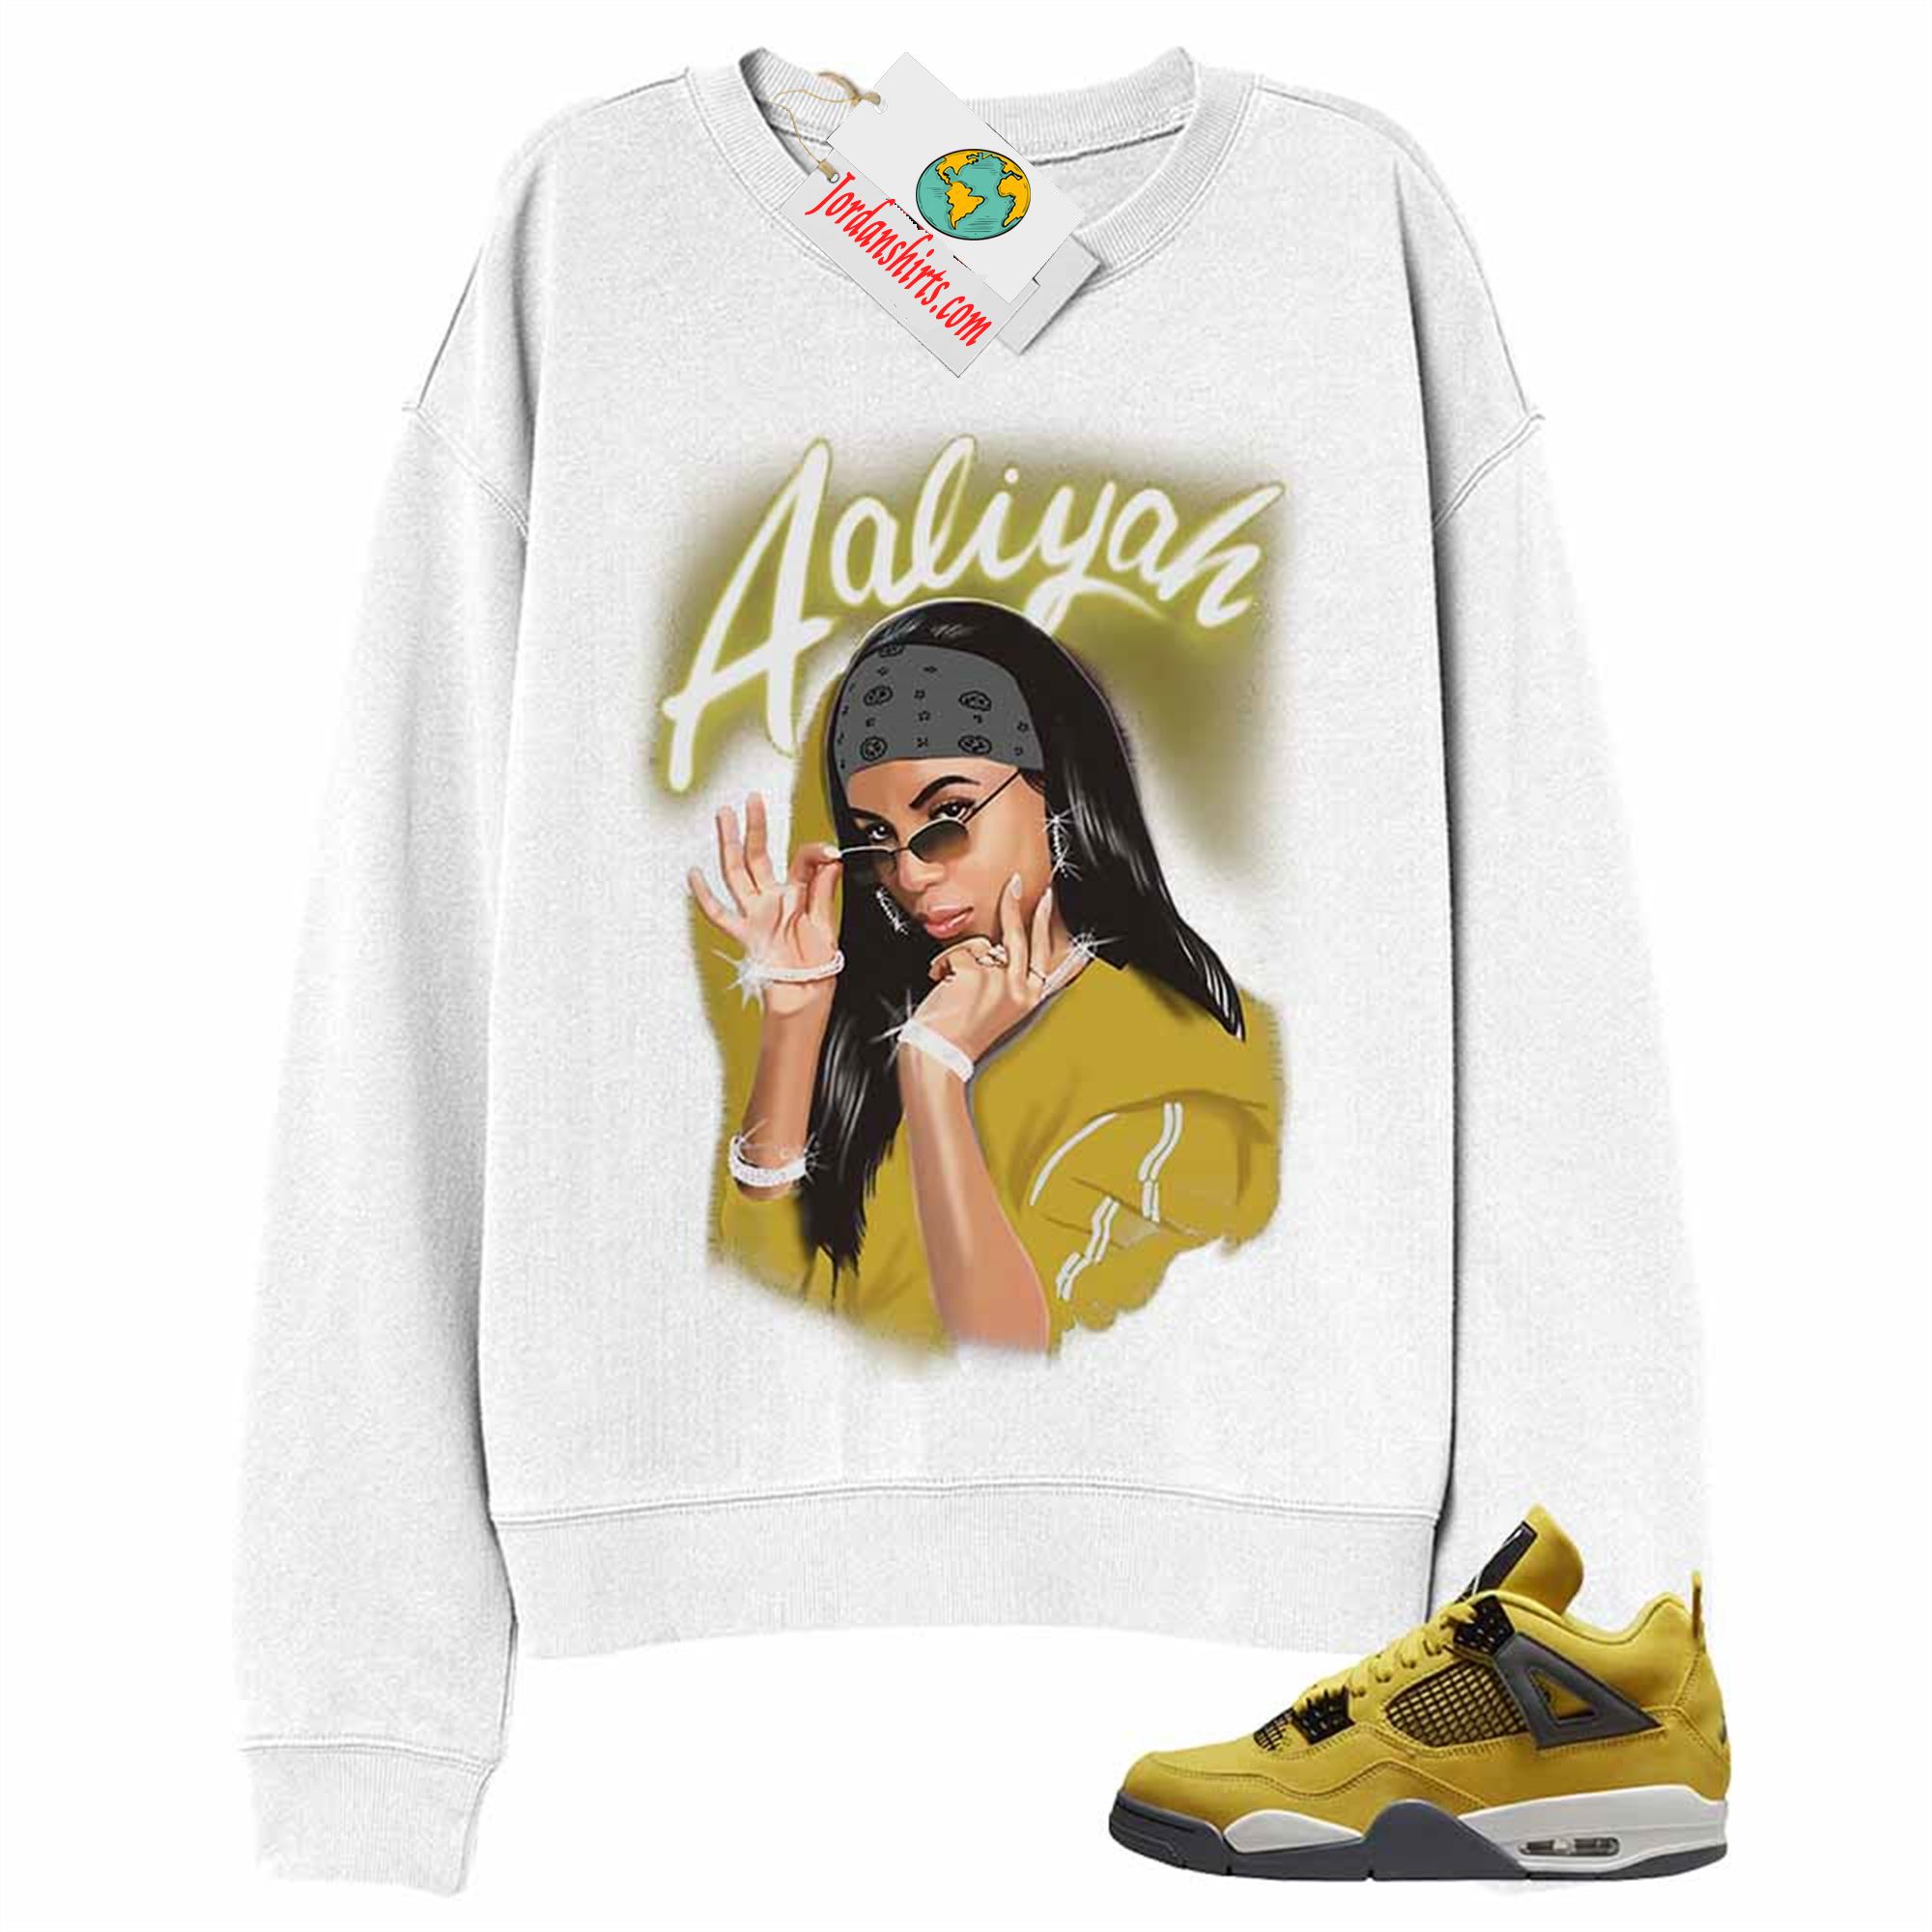 Jordan 4 Sweatshirt, Aaliyah Airbrush White Sweatshirt Air Jordan 4 Lightning 4s Size Up To 5xl